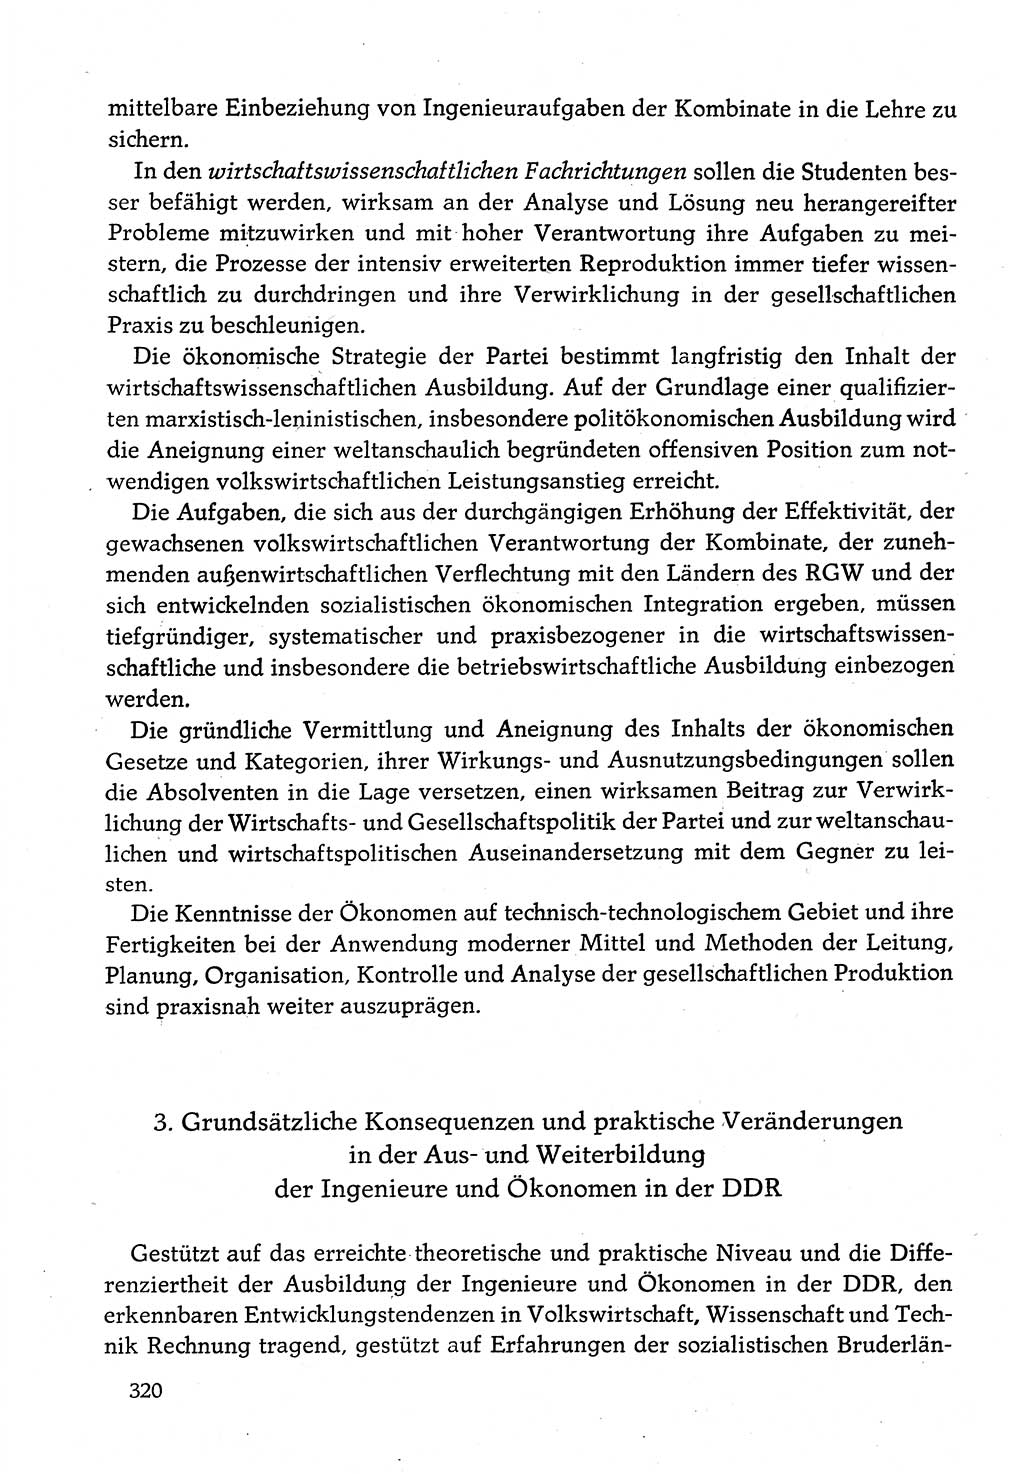 Dokumente der Sozialistischen Einheitspartei Deutschlands (SED) [Deutsche Demokratische Republik (DDR)] 1982-1983, Seite 320 (Dok. SED DDR 1982-1983, S. 320)